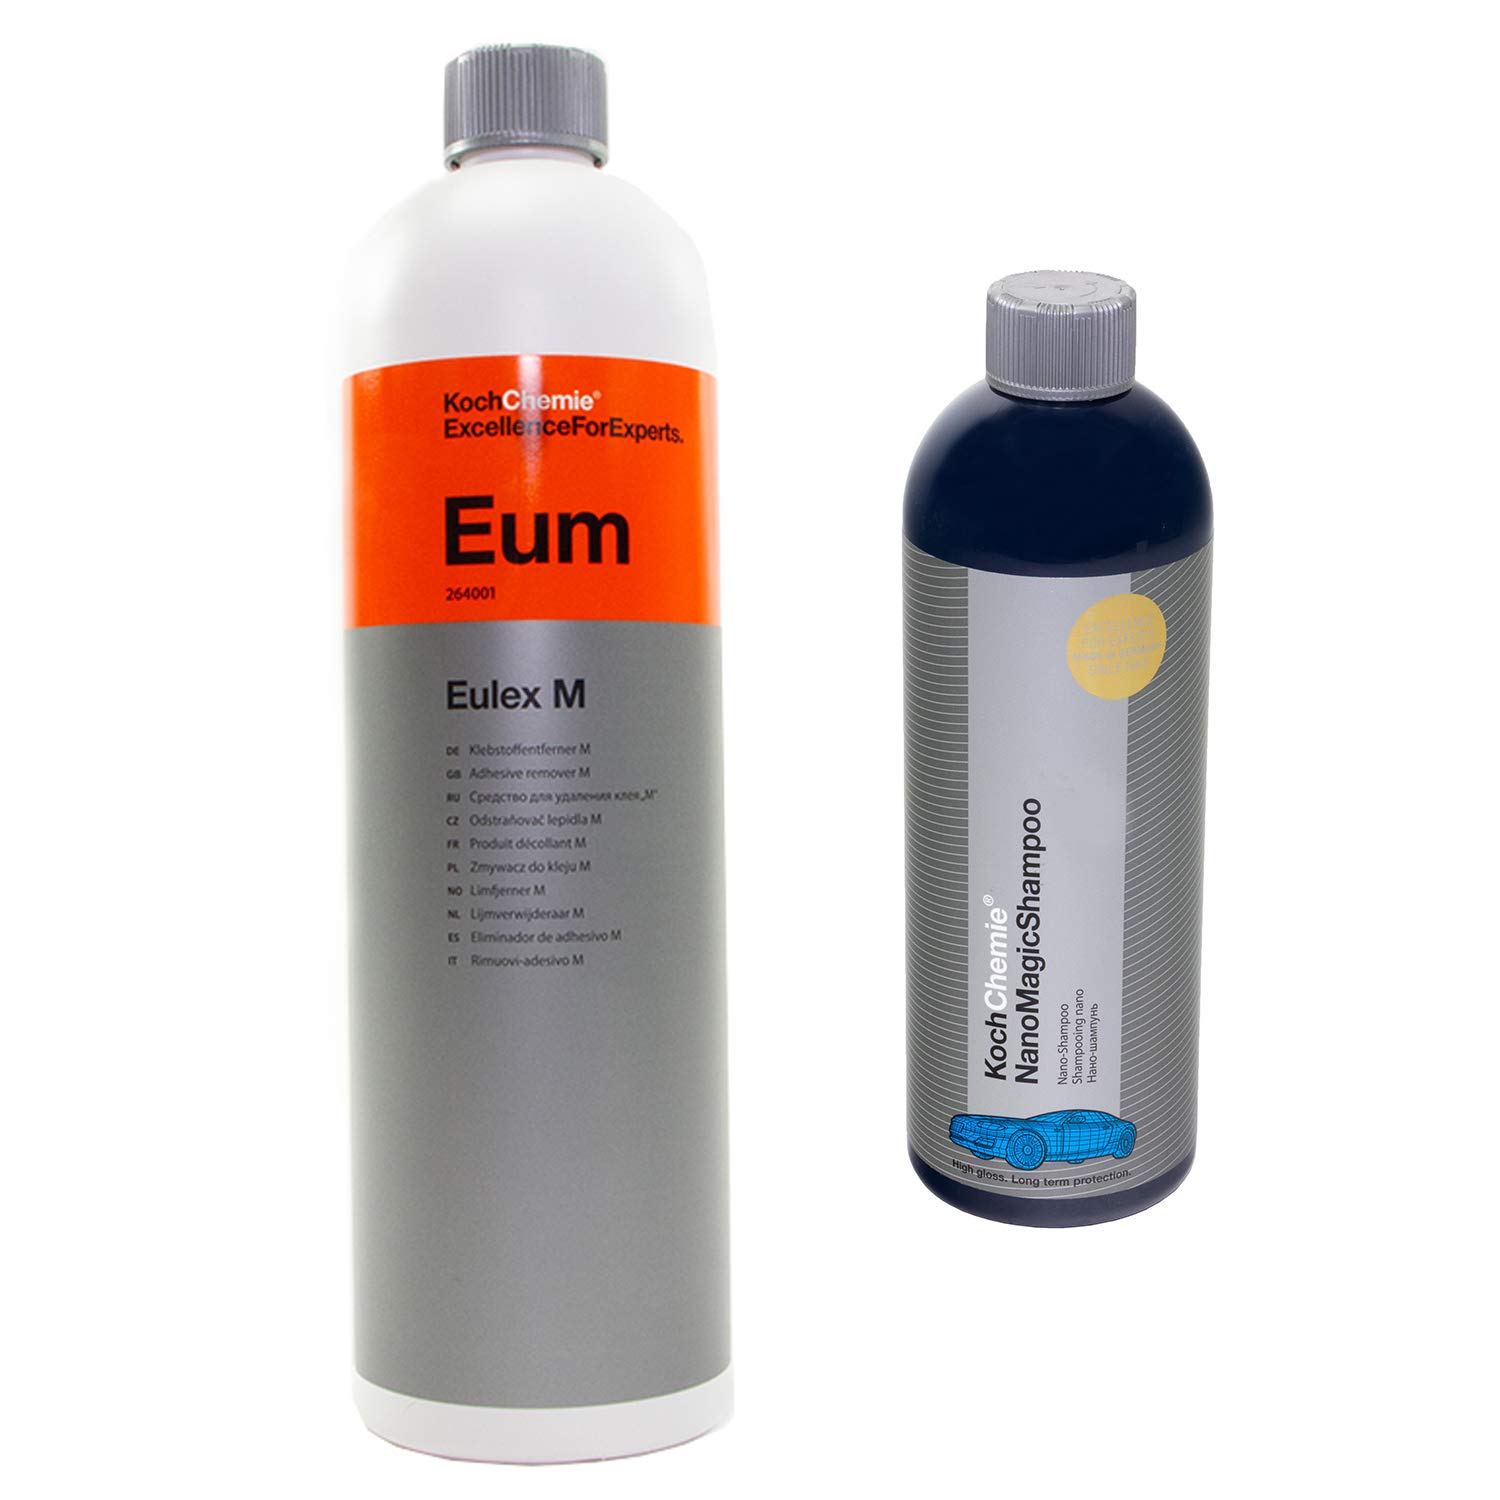 Klebstoffentferner Eulex M Eum Koch Chemie 1 Liter + Nano Magic Shampoo 750 ml von MVH Bockauf